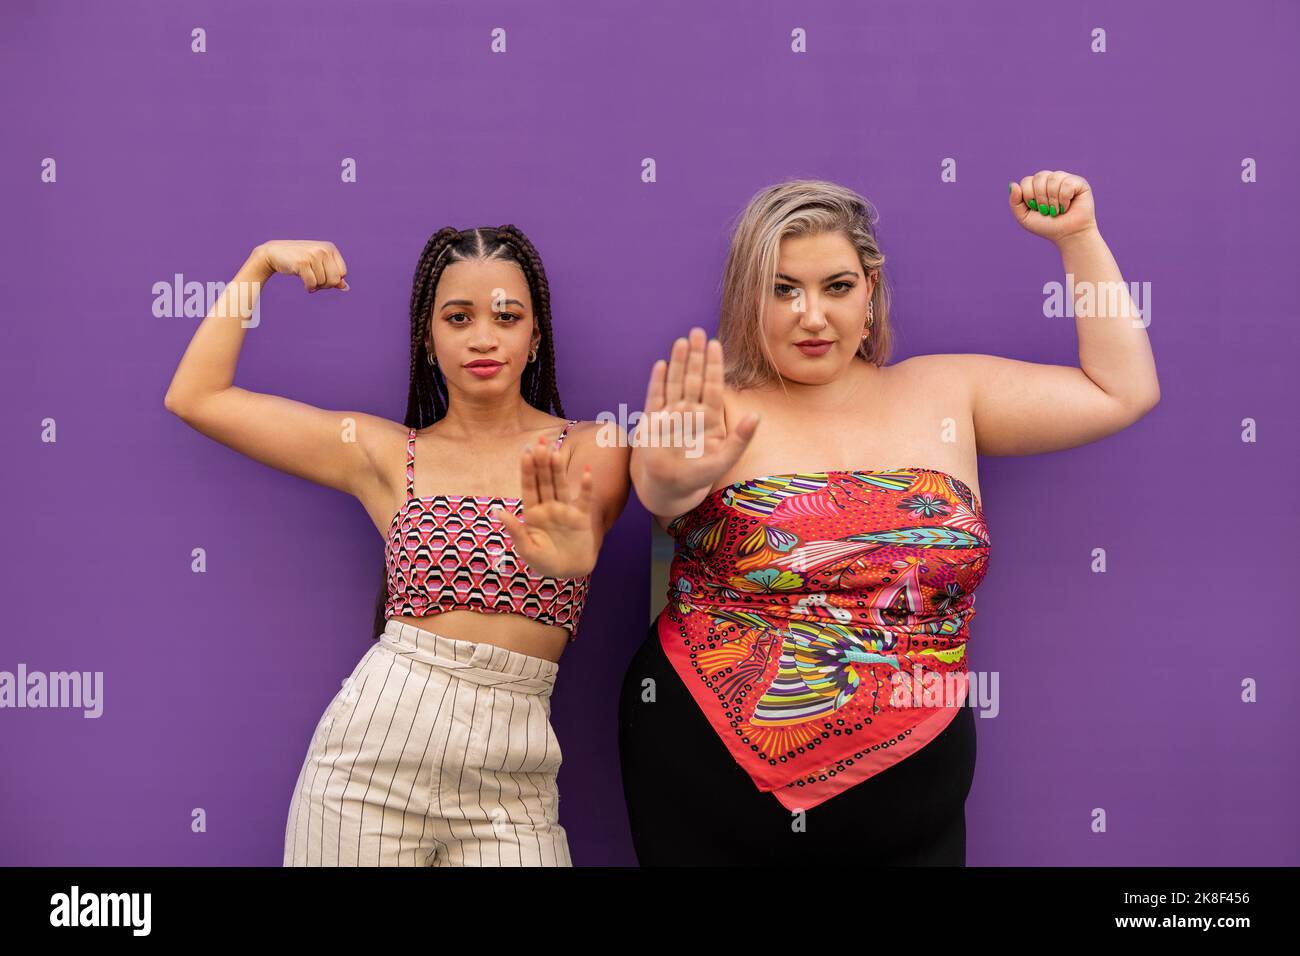 Junge Frauen biegen Muskeln und gestikulieren Stop-Zeichen vor der lila Wand Stockfoto